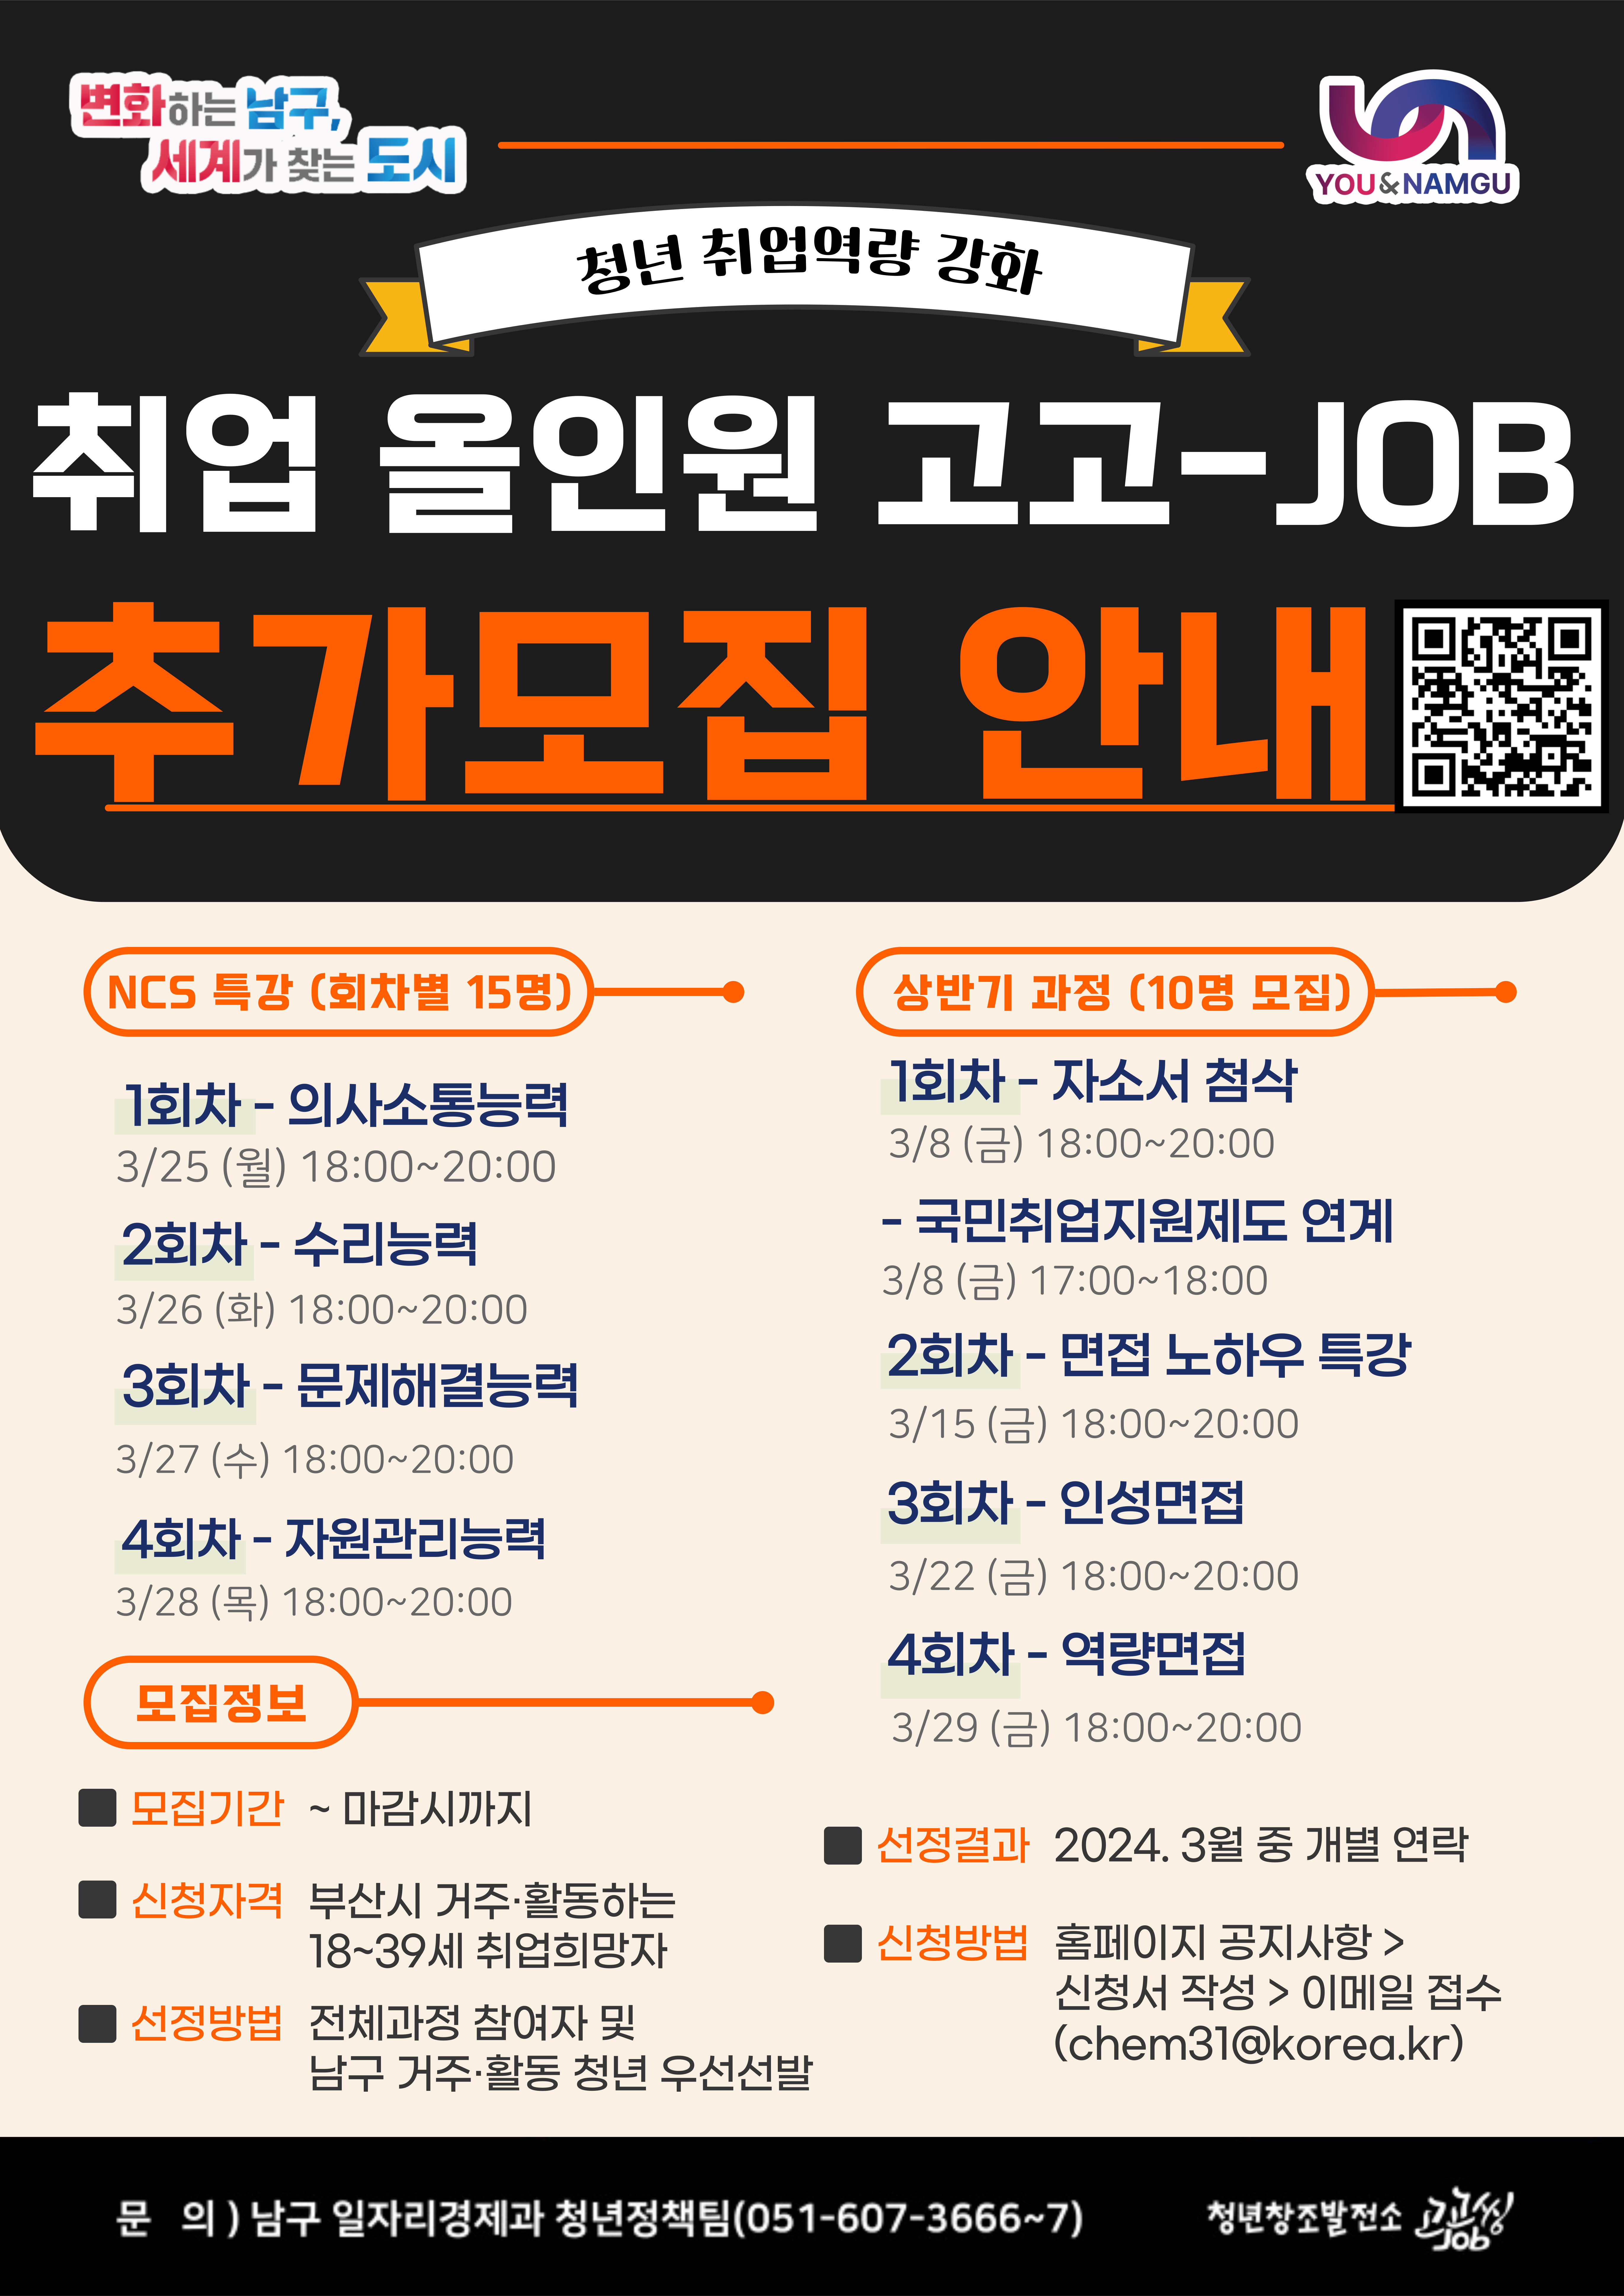 [공지] 취업올인원 고고-JOB 참여자 추가 모집